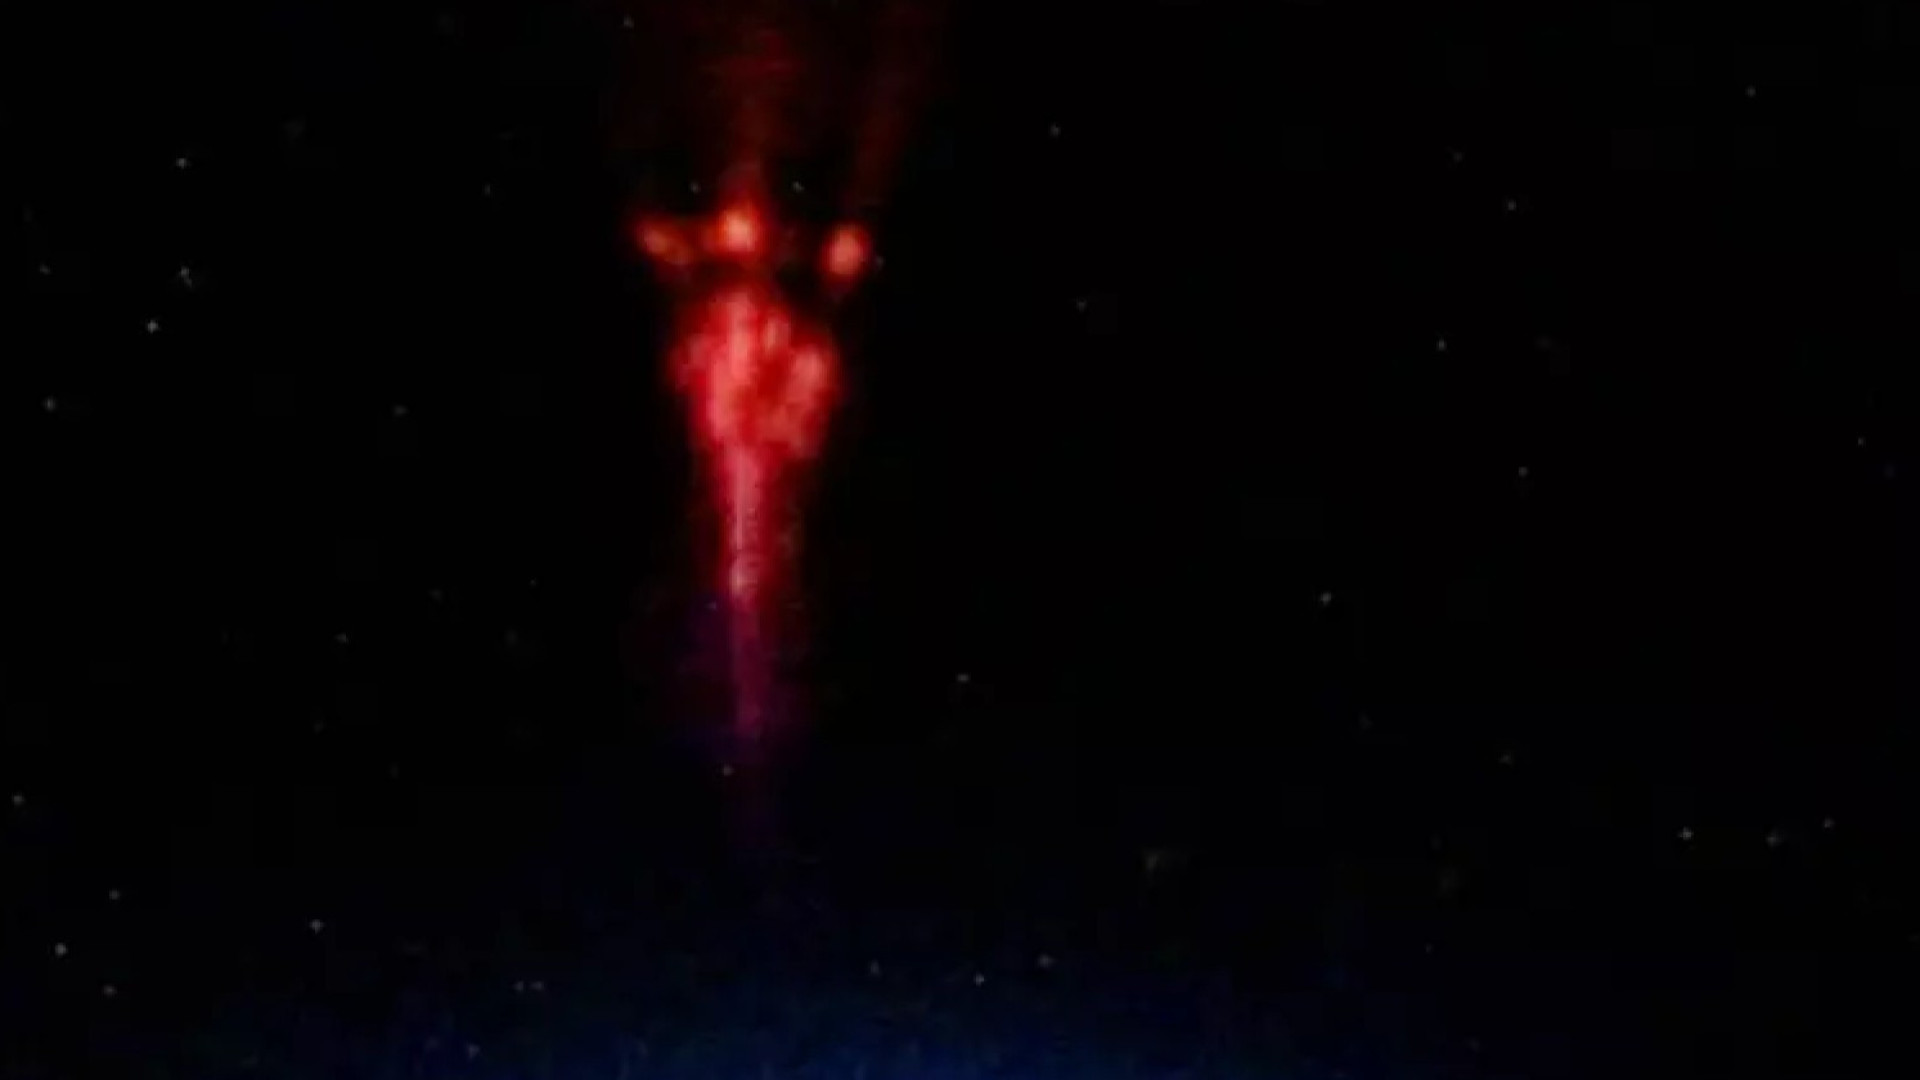 Sprite vermelho? Astronauta captura raro fenômeno visto da Terra